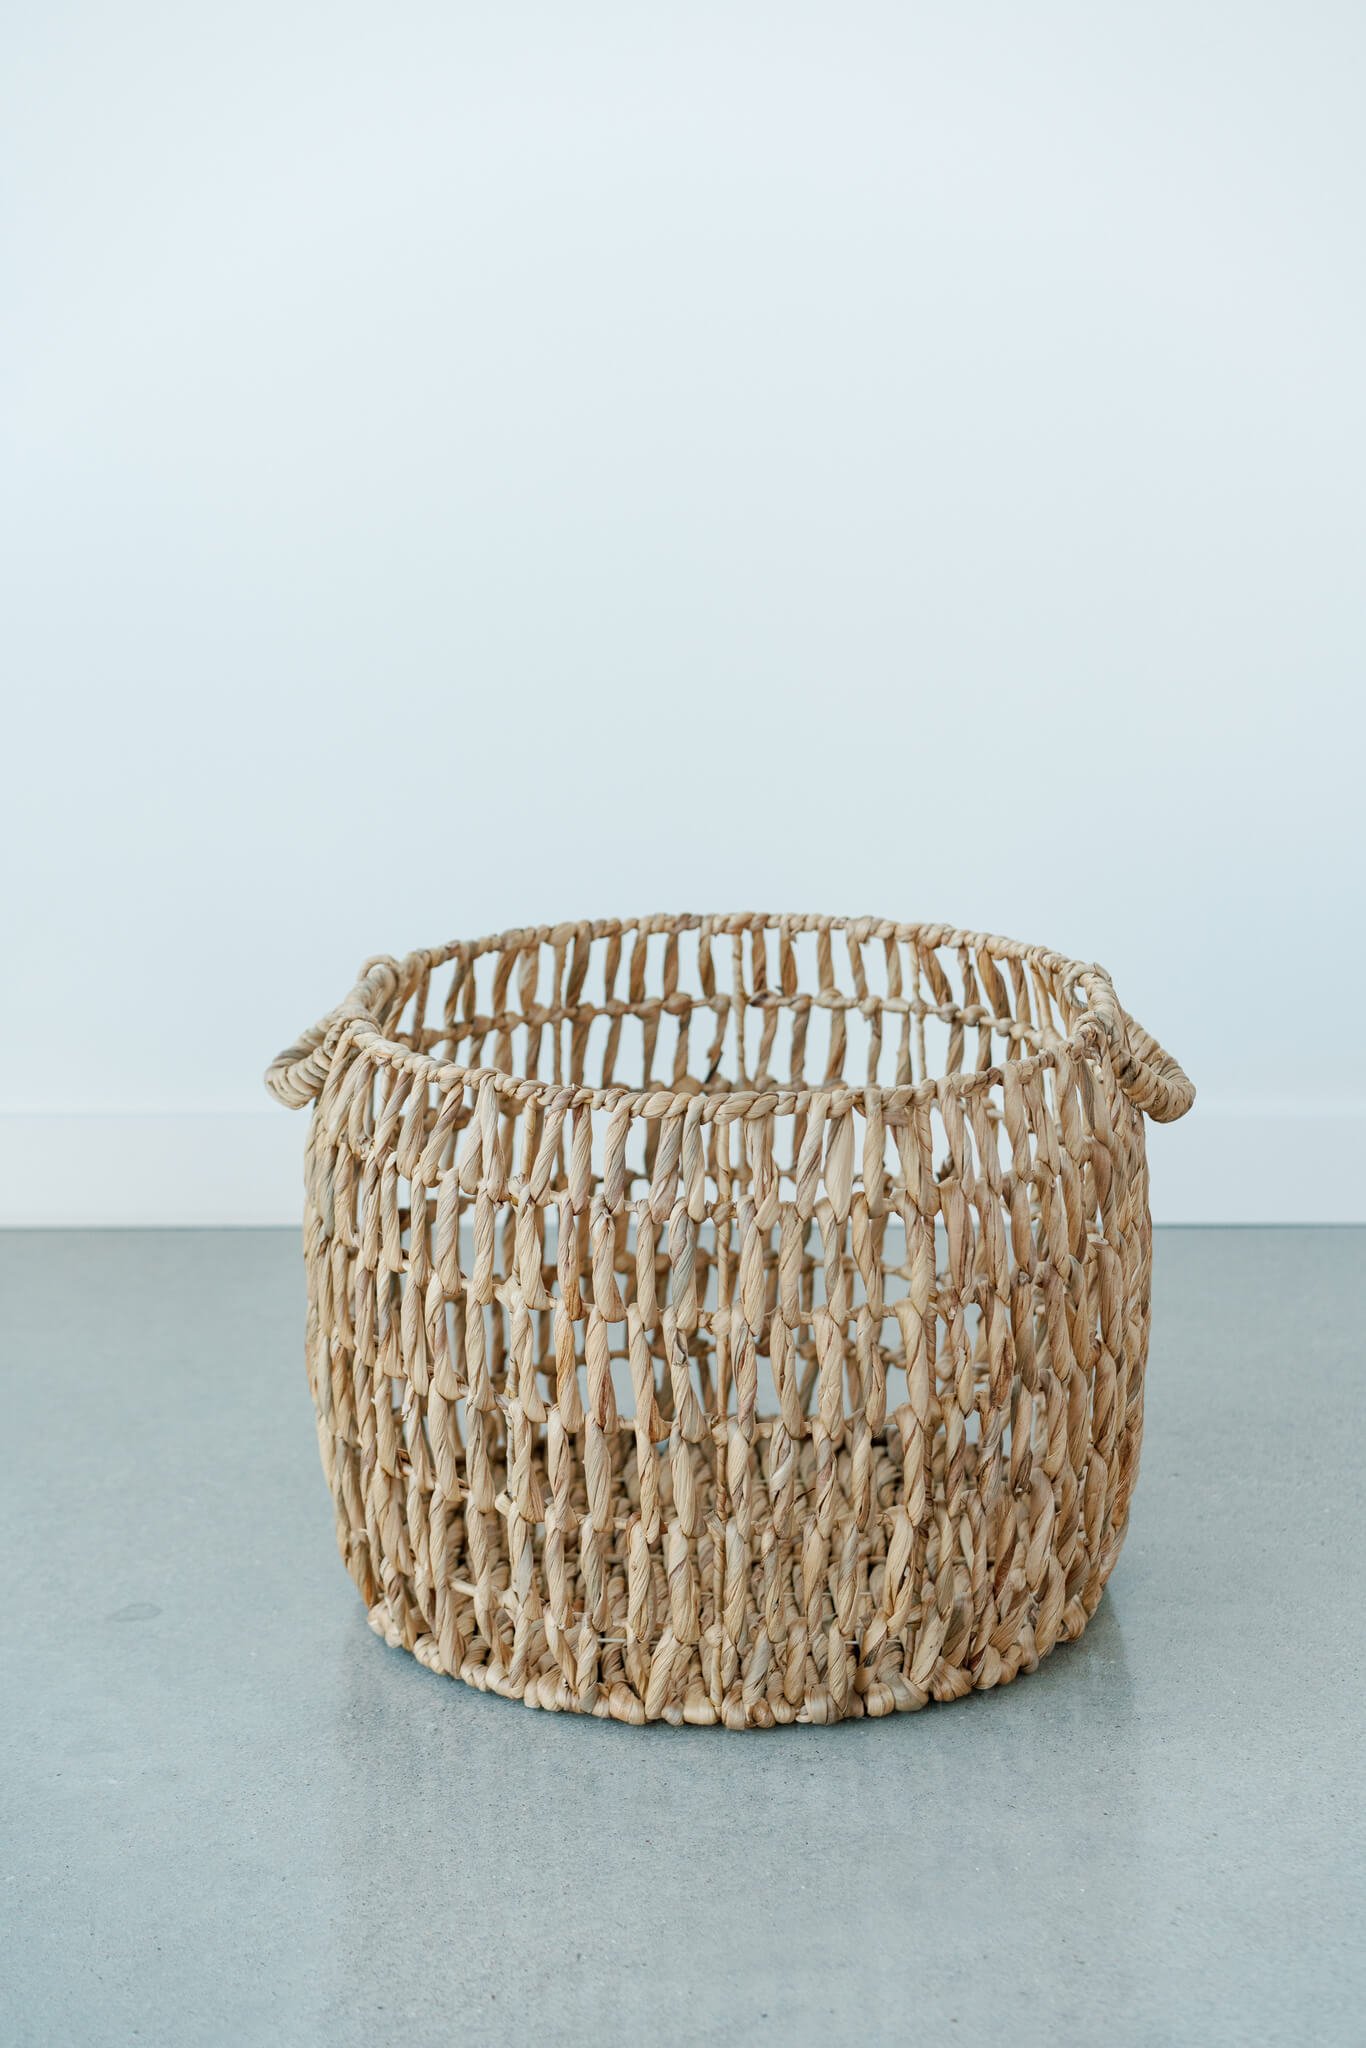 woven-basket-natural-light-studio.jpg